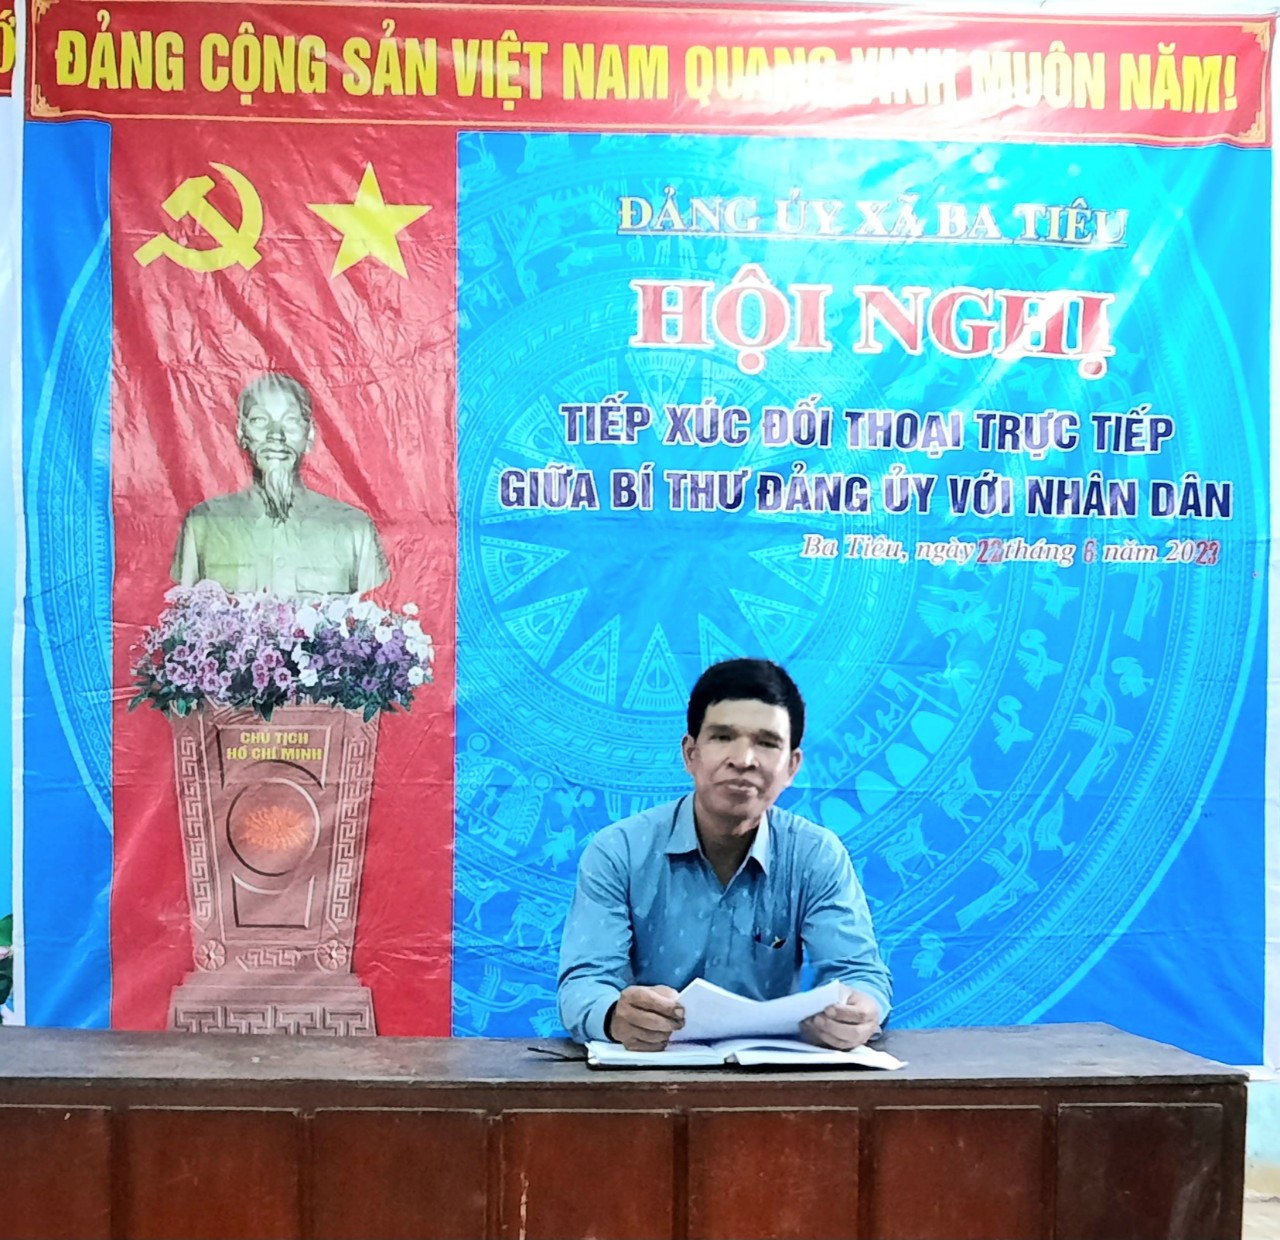 Hội nghị đối thoại giữa Bí thư Đảng ủy xã với nhân dân thôn Nước Tỉa, xã Ba Tiêu